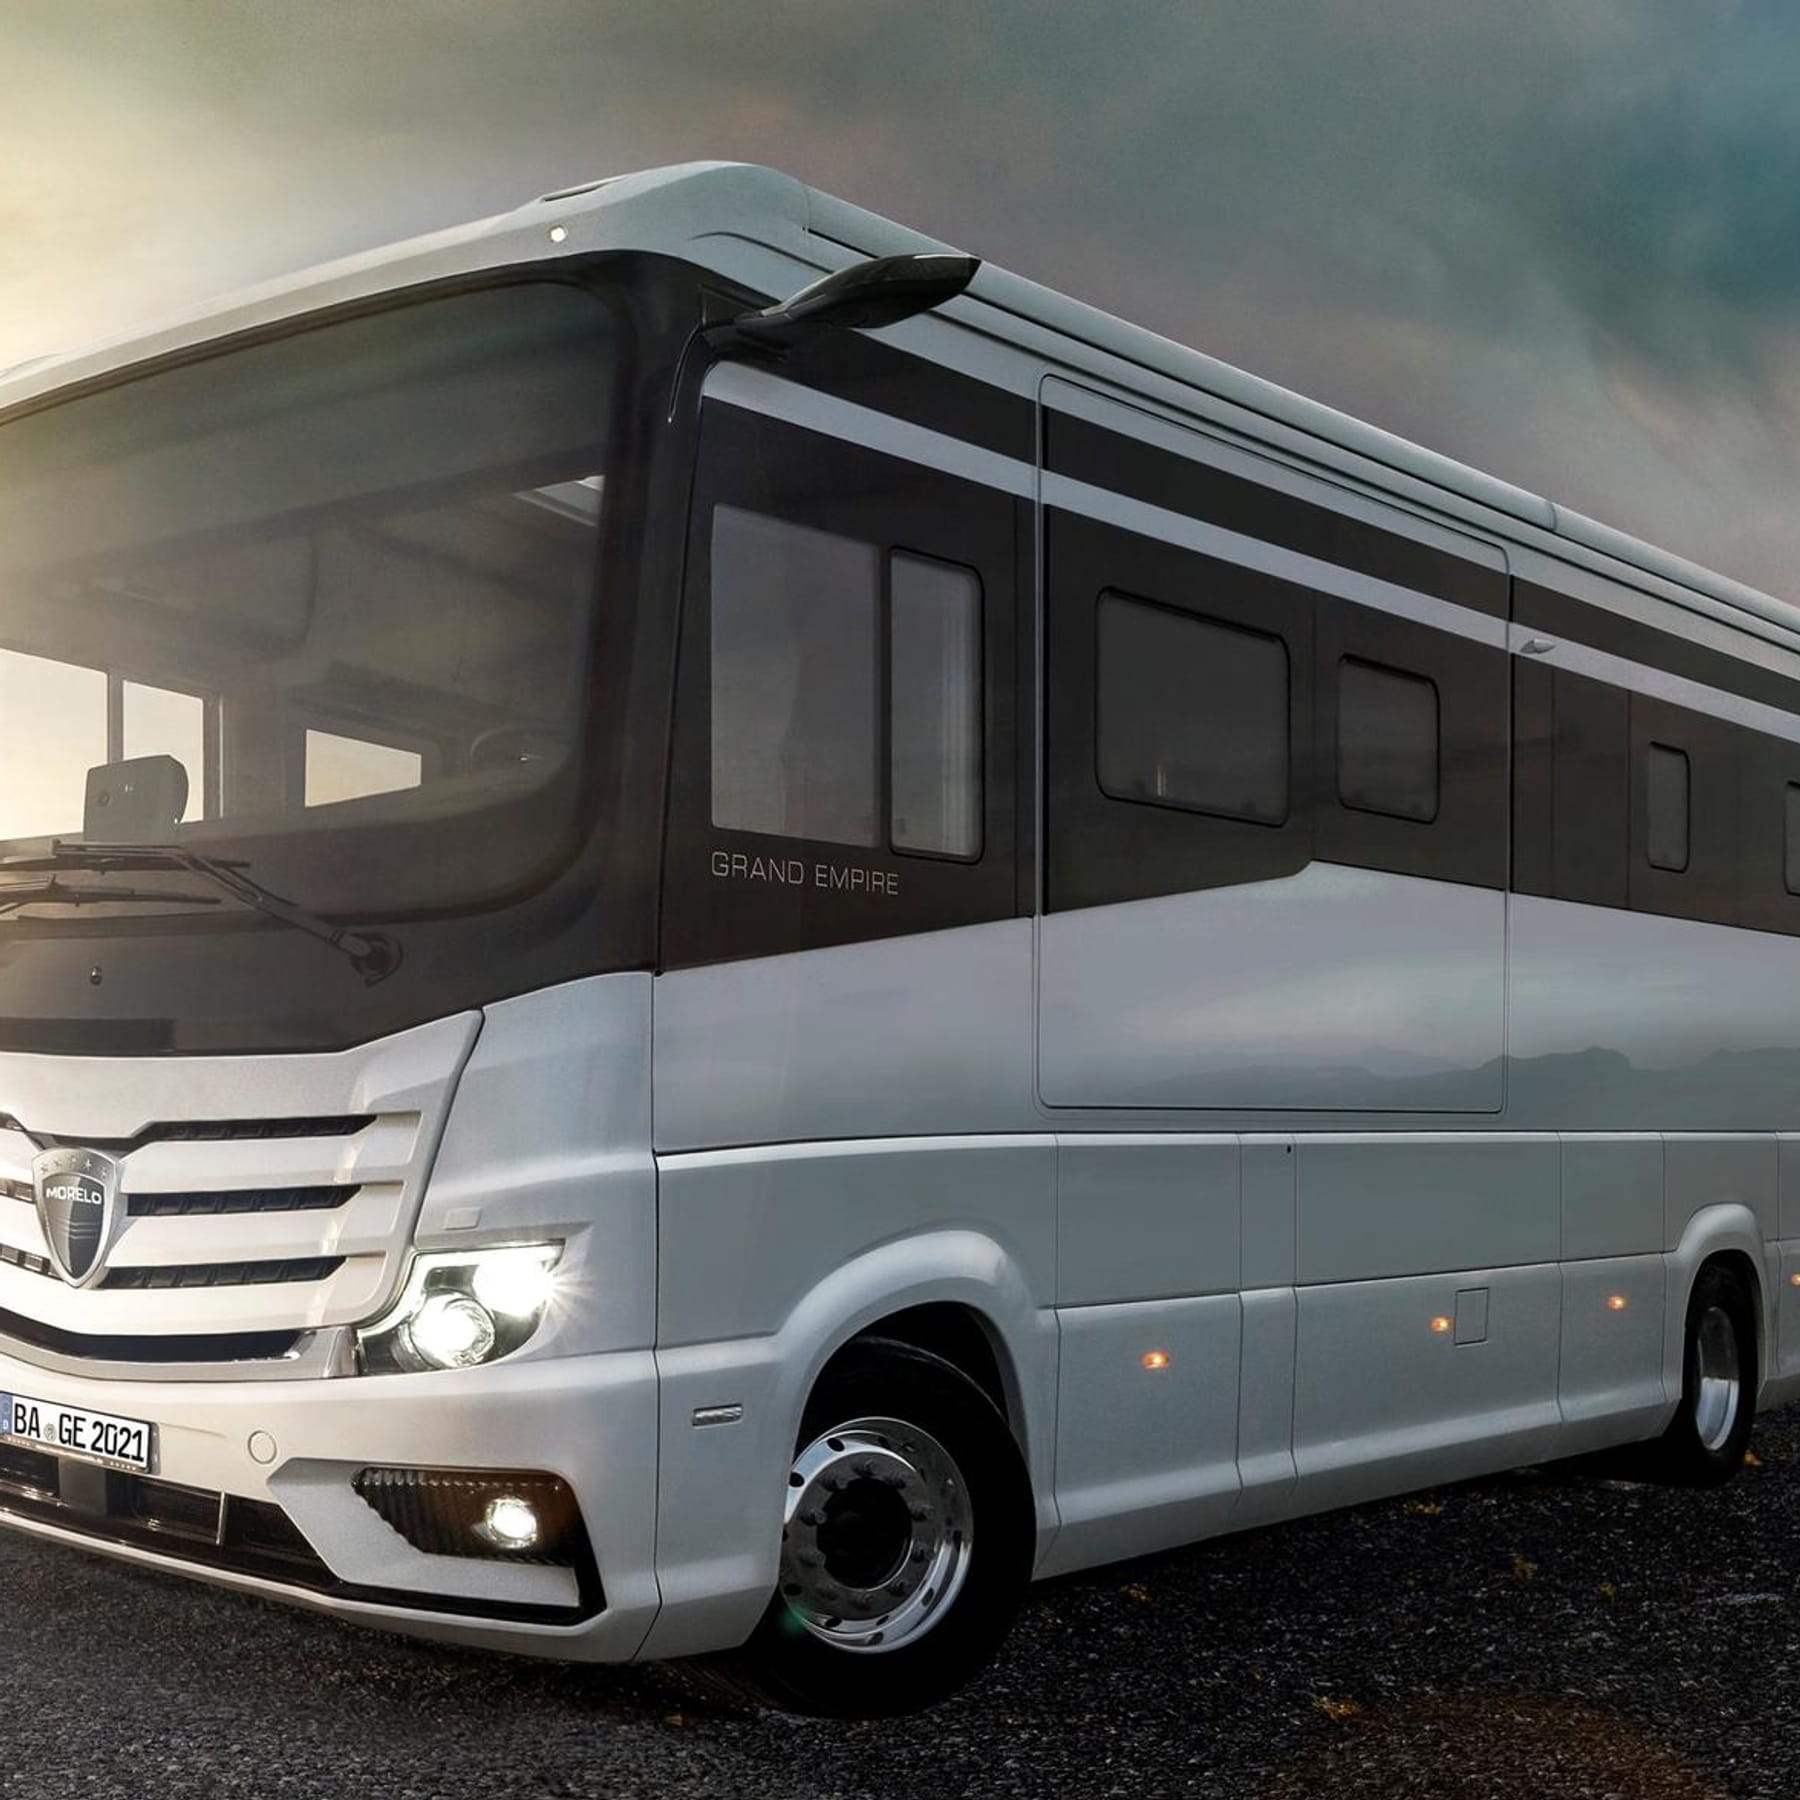 Purer Luxus beim Caravan-Salon: Dieses Wohnmobil kostet 600.000 Euro!